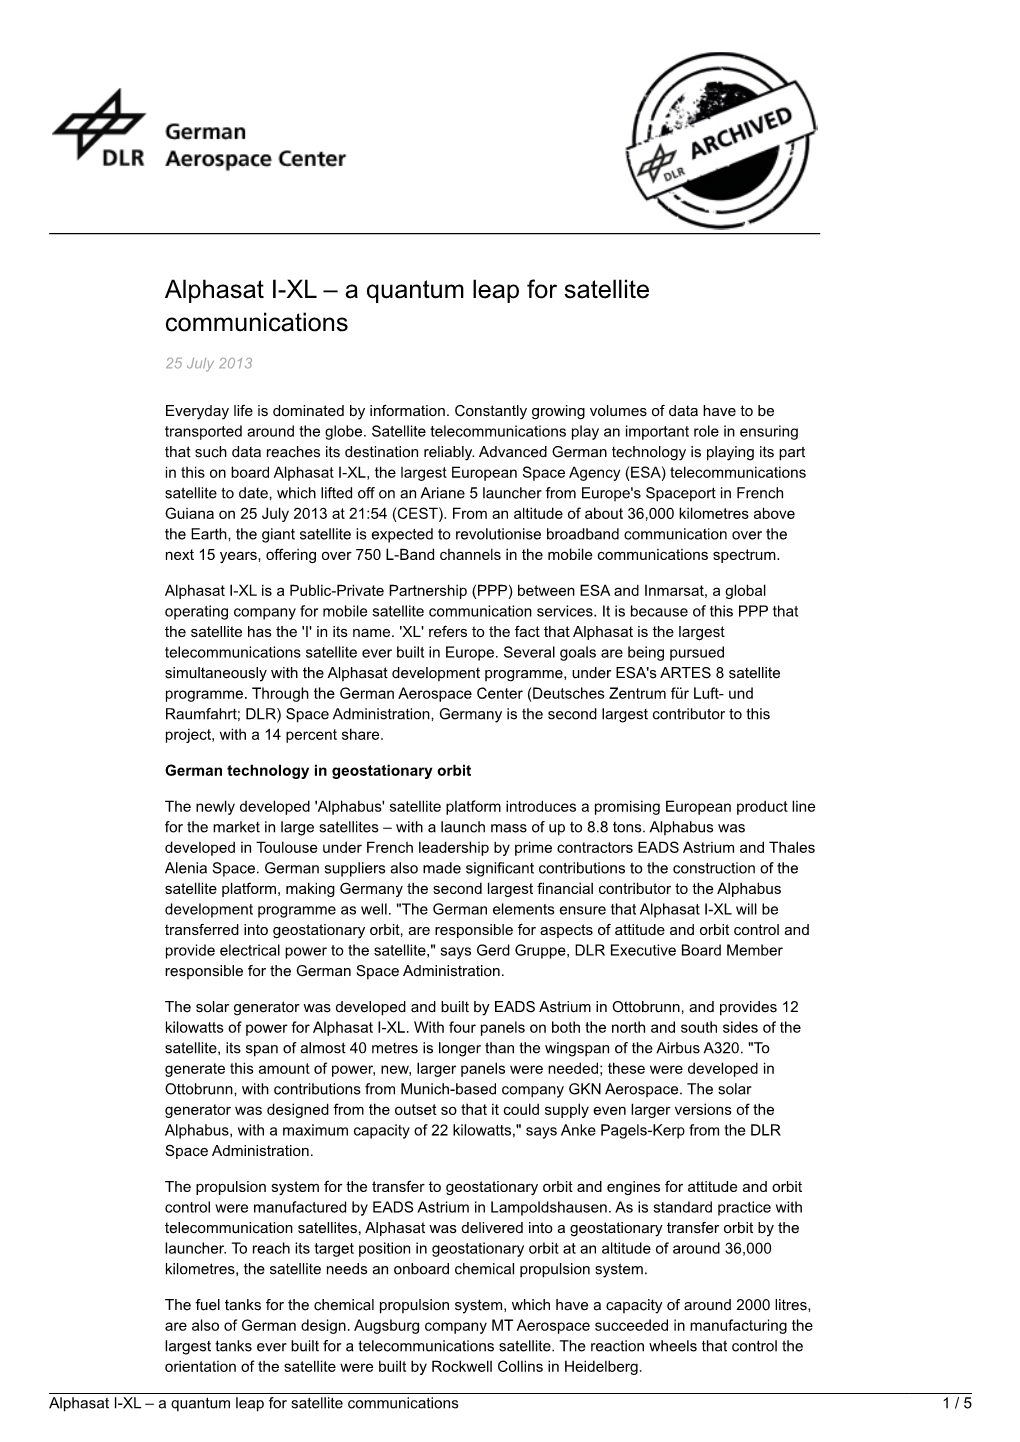 Alphasat I-XL – a Quantum Leap for Satellite Communications